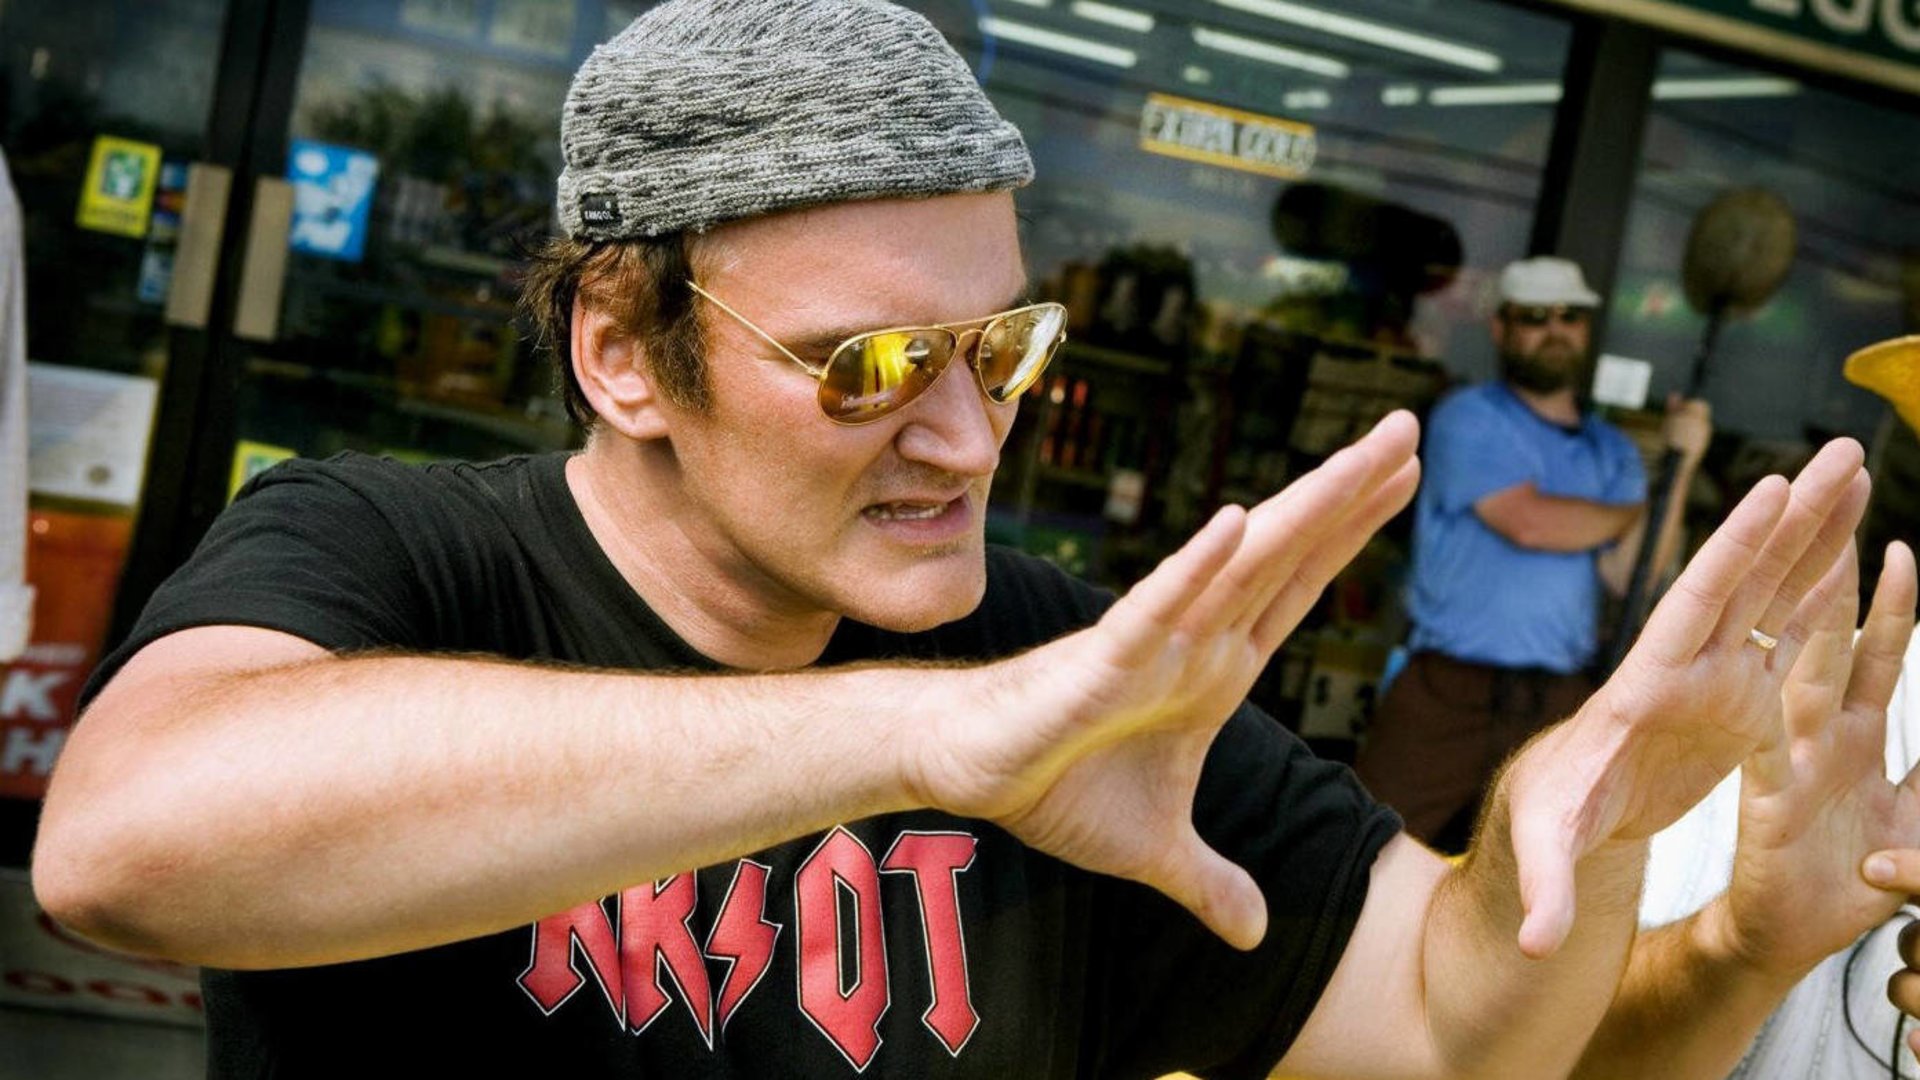 #Es ist so weit: Erste Details bekannt zu Quentin Tarantinos vermeintlich finalem Film